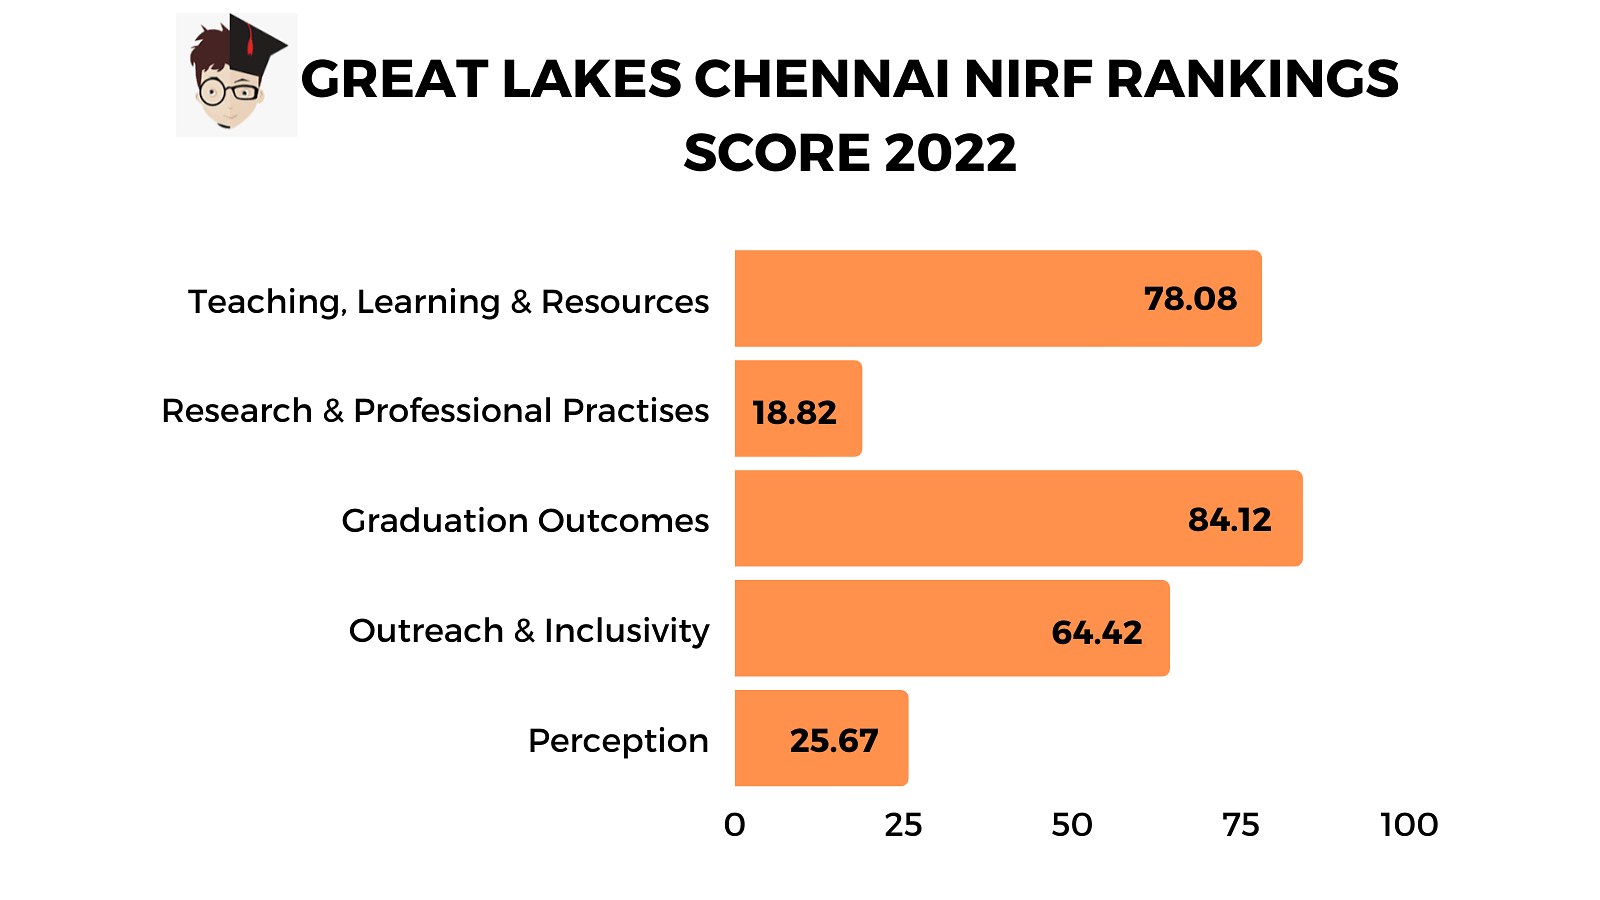 Great Lakes Chennai NIRF Ranking 2022 Scores